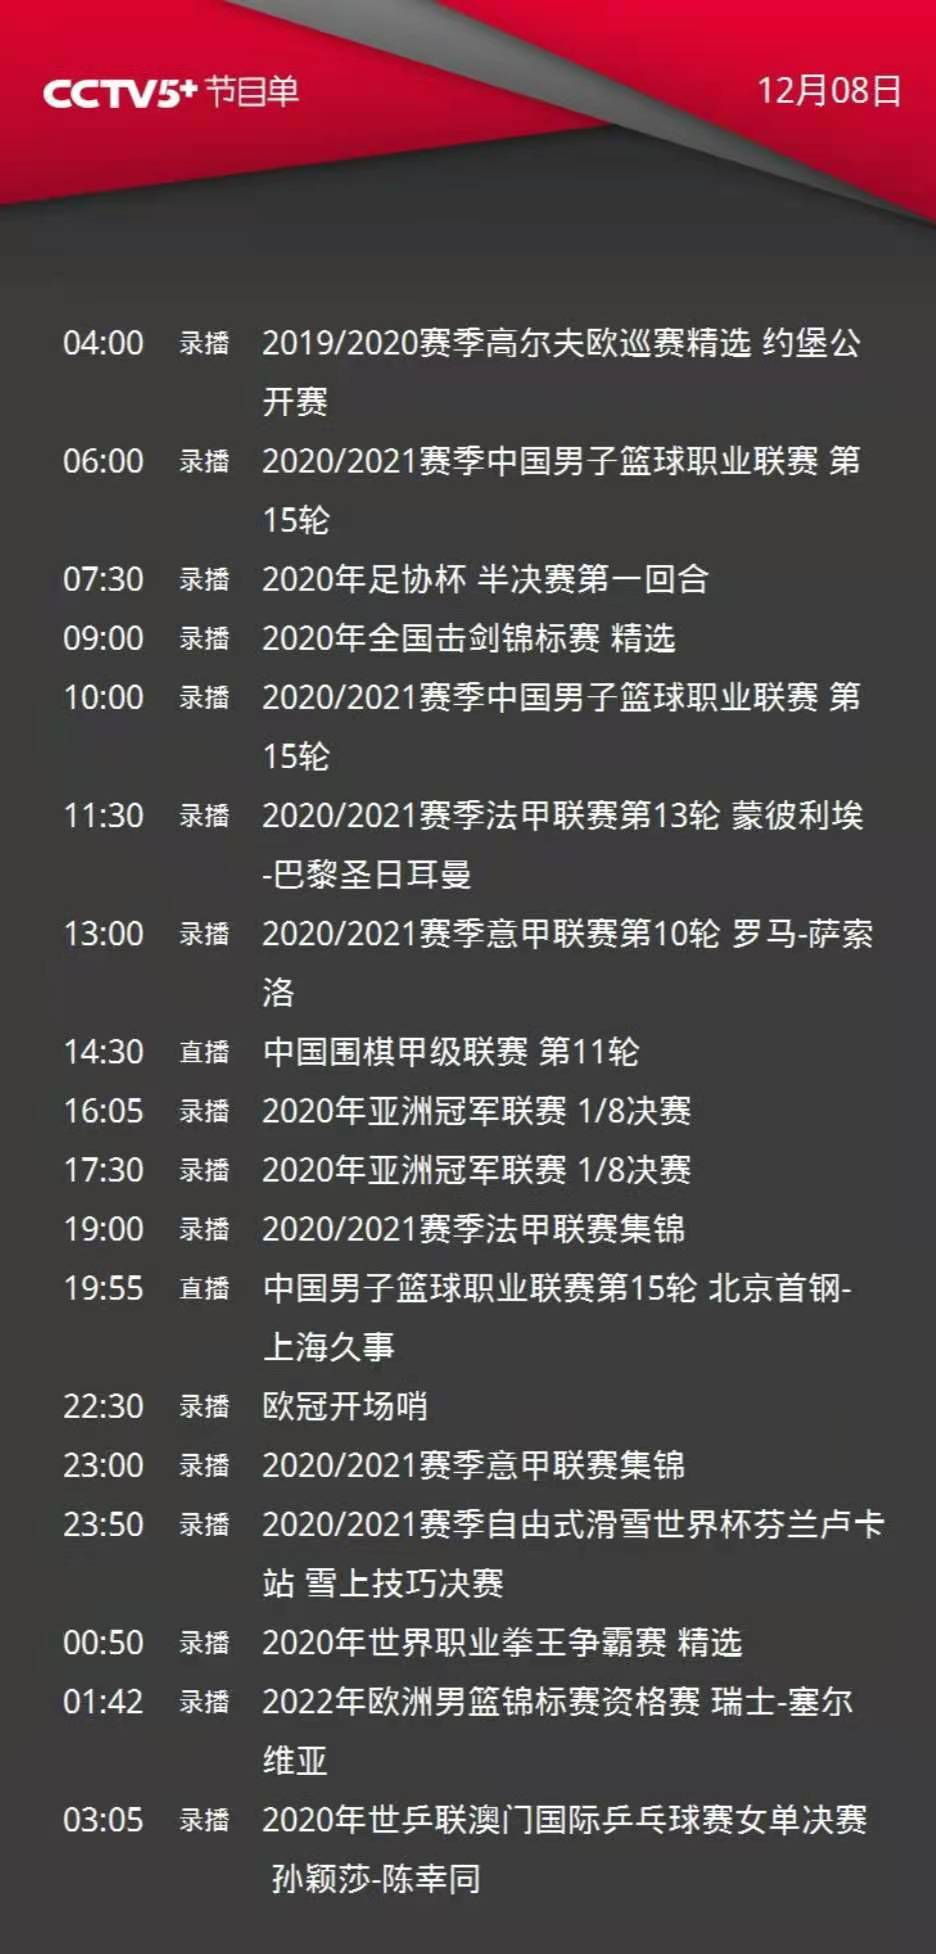 央视体育今日节目单:直播CBA(山西-浙江、北京-上海)